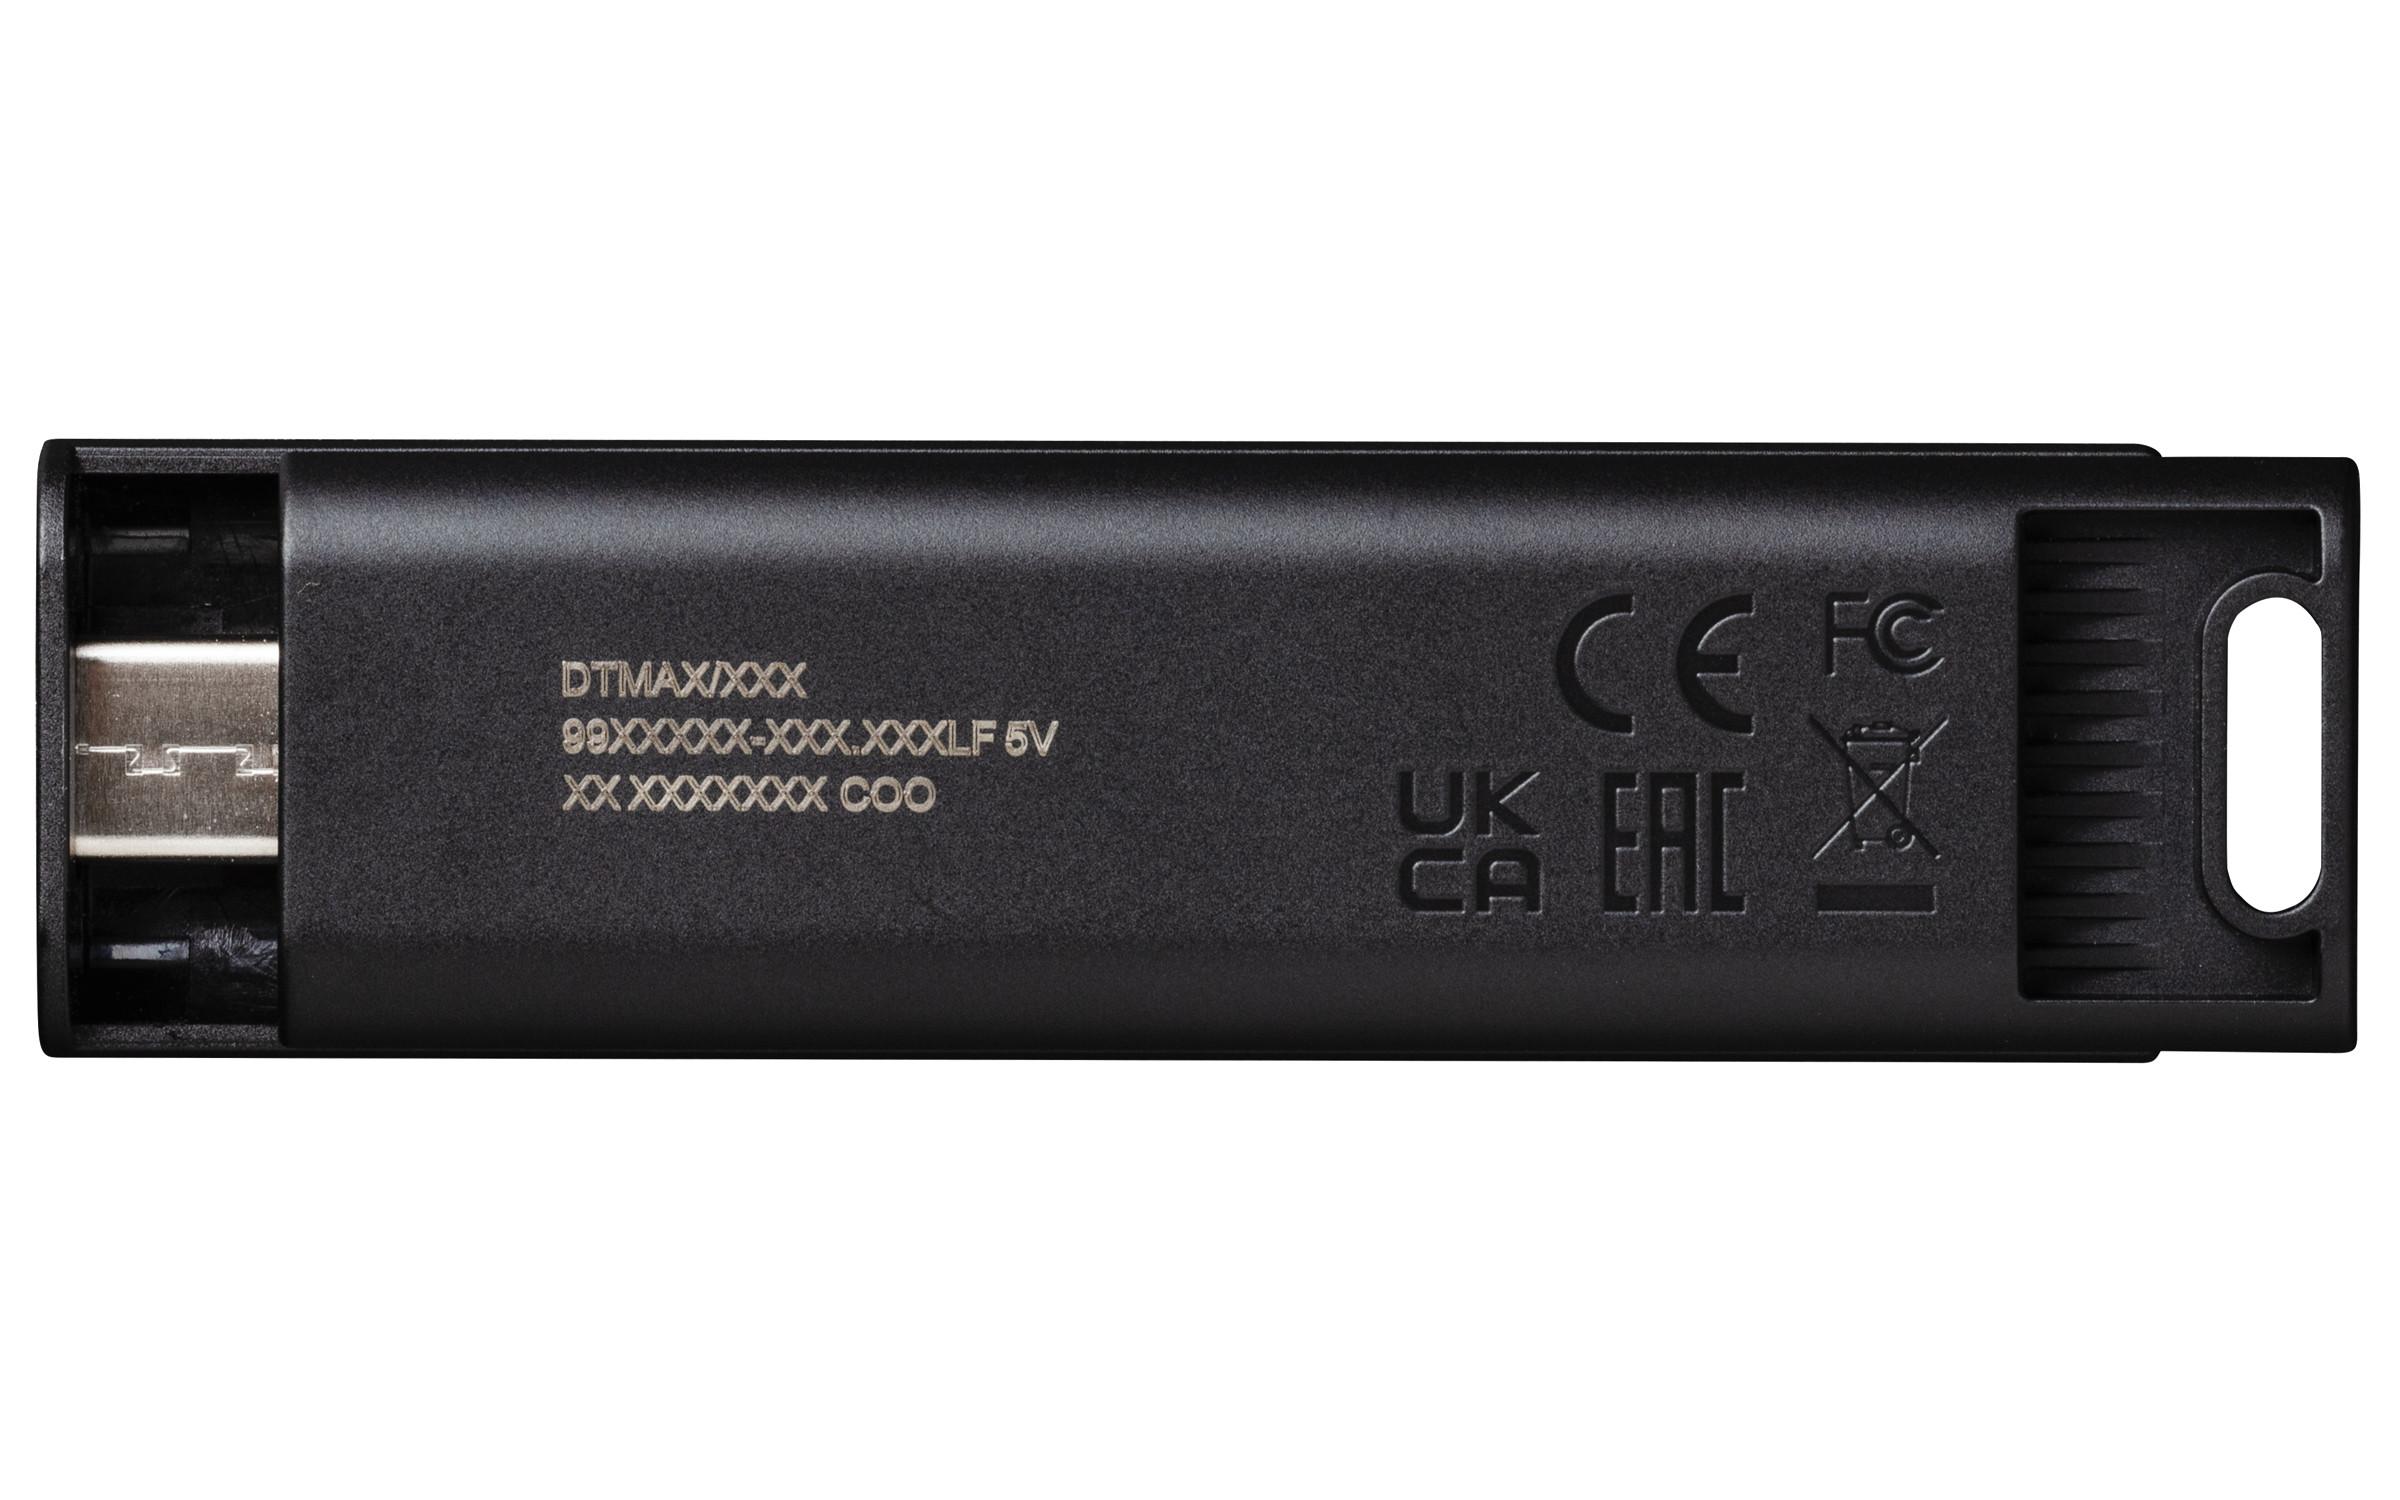 KINGSTON TECHNOLOGY  Kingston Technology DataTraveler 256GB Max 1000R/900W USB 3.2 Gen 2 